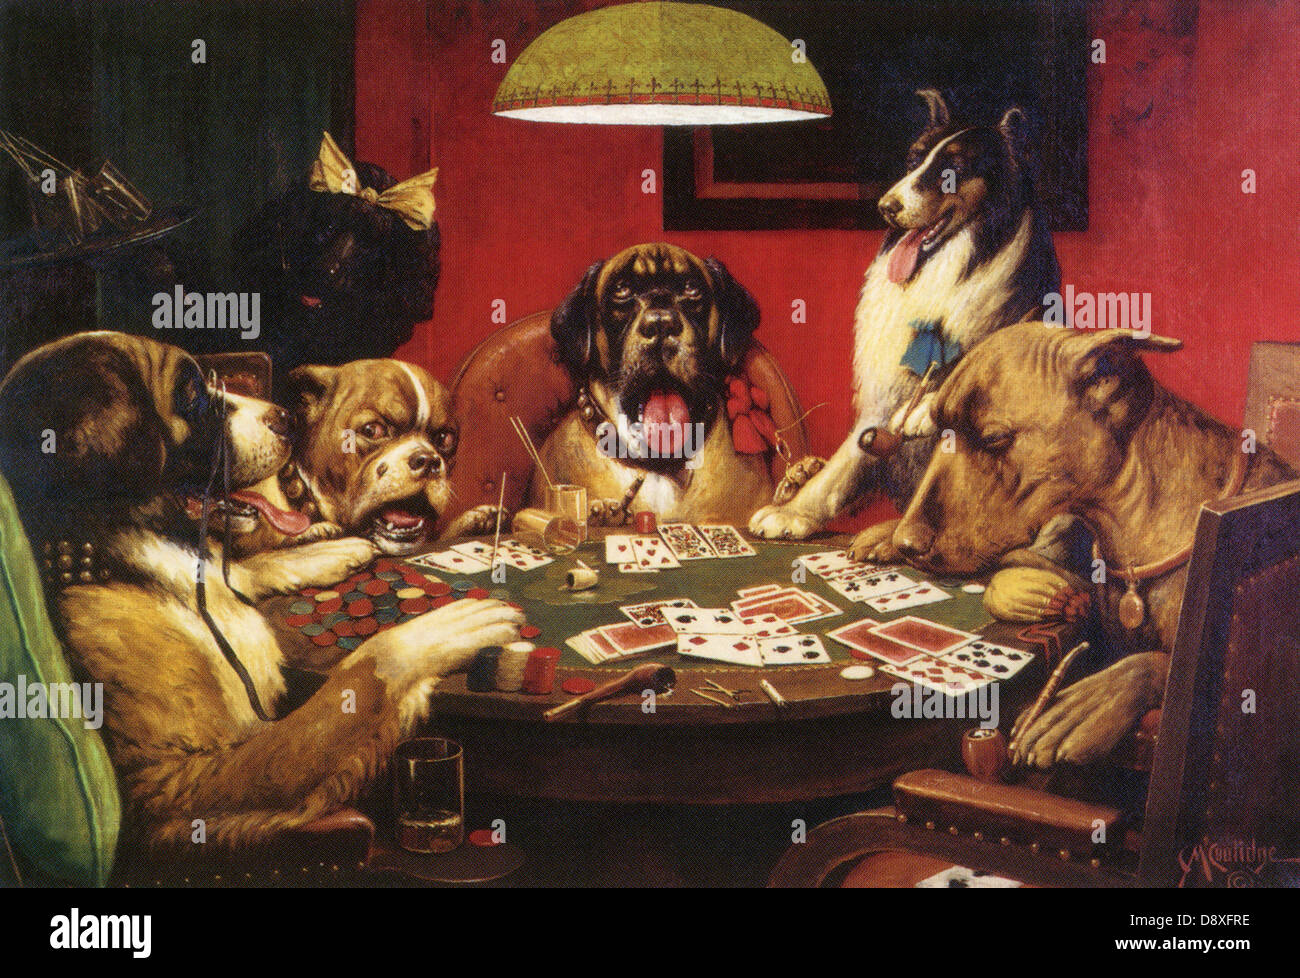 Les chiens jouant au poker par Cassius Marcellus Coolidge Photo Stock -  Alamy